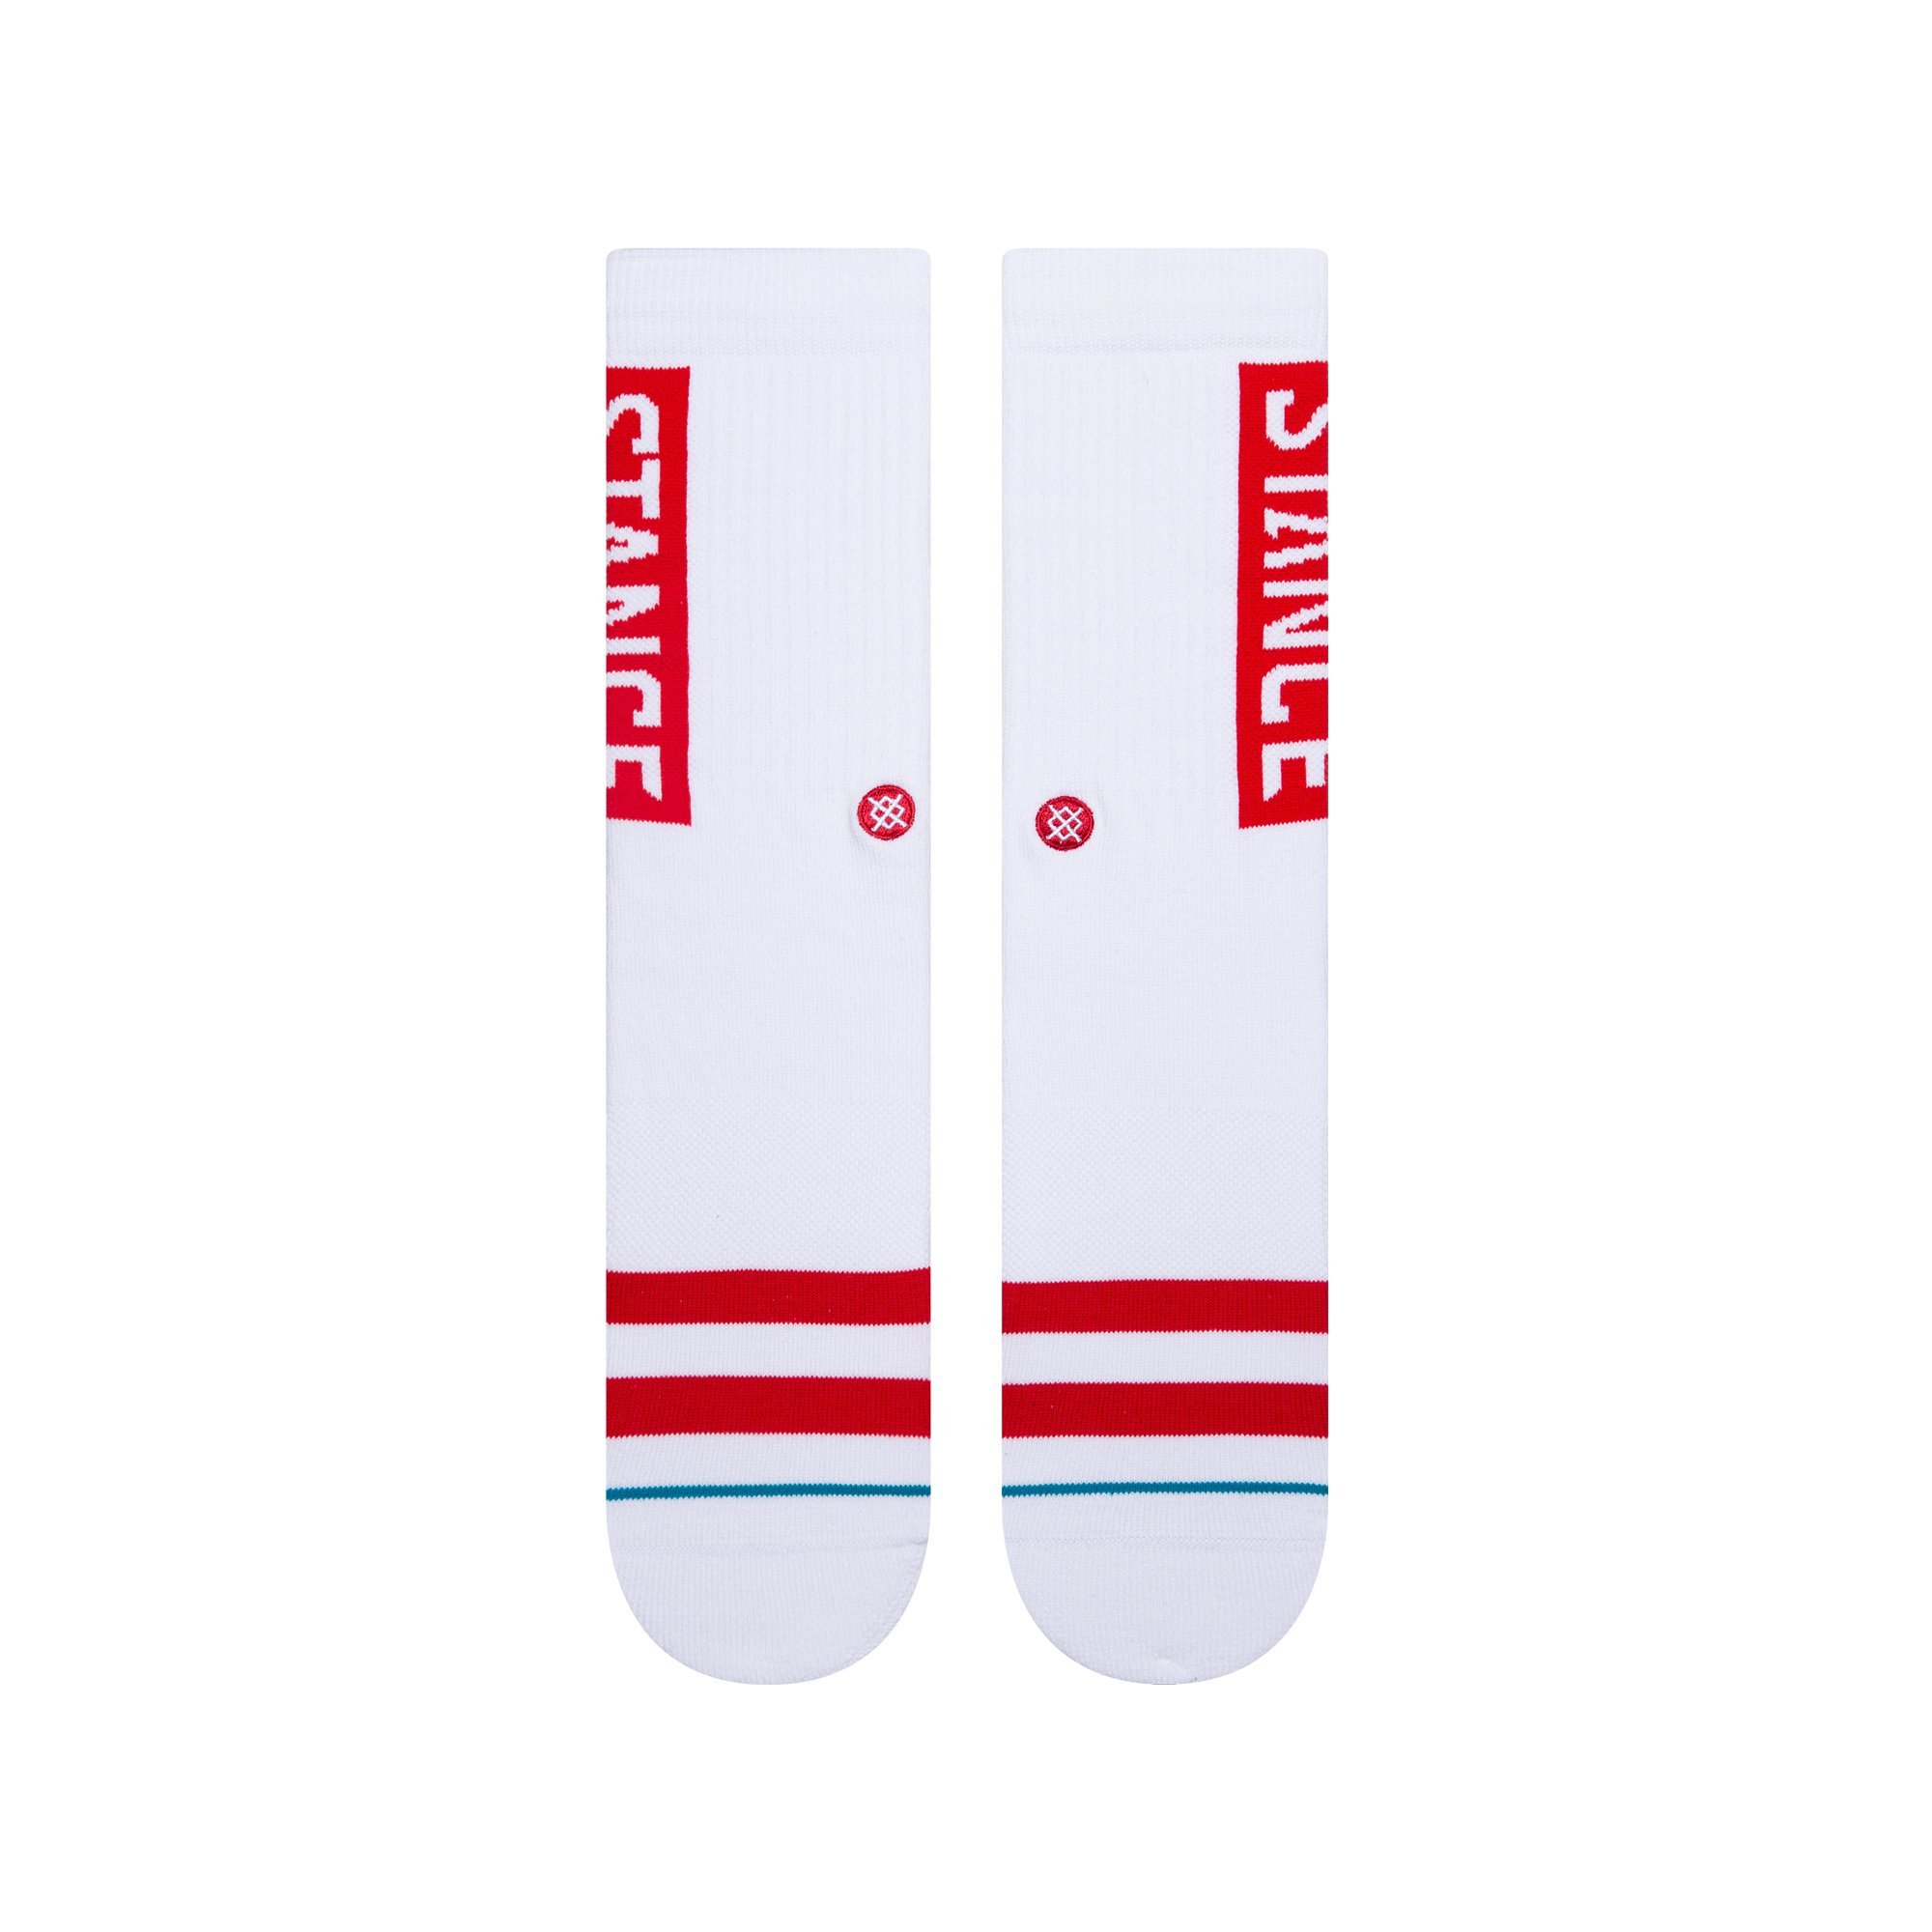 OG Socks - White / Red